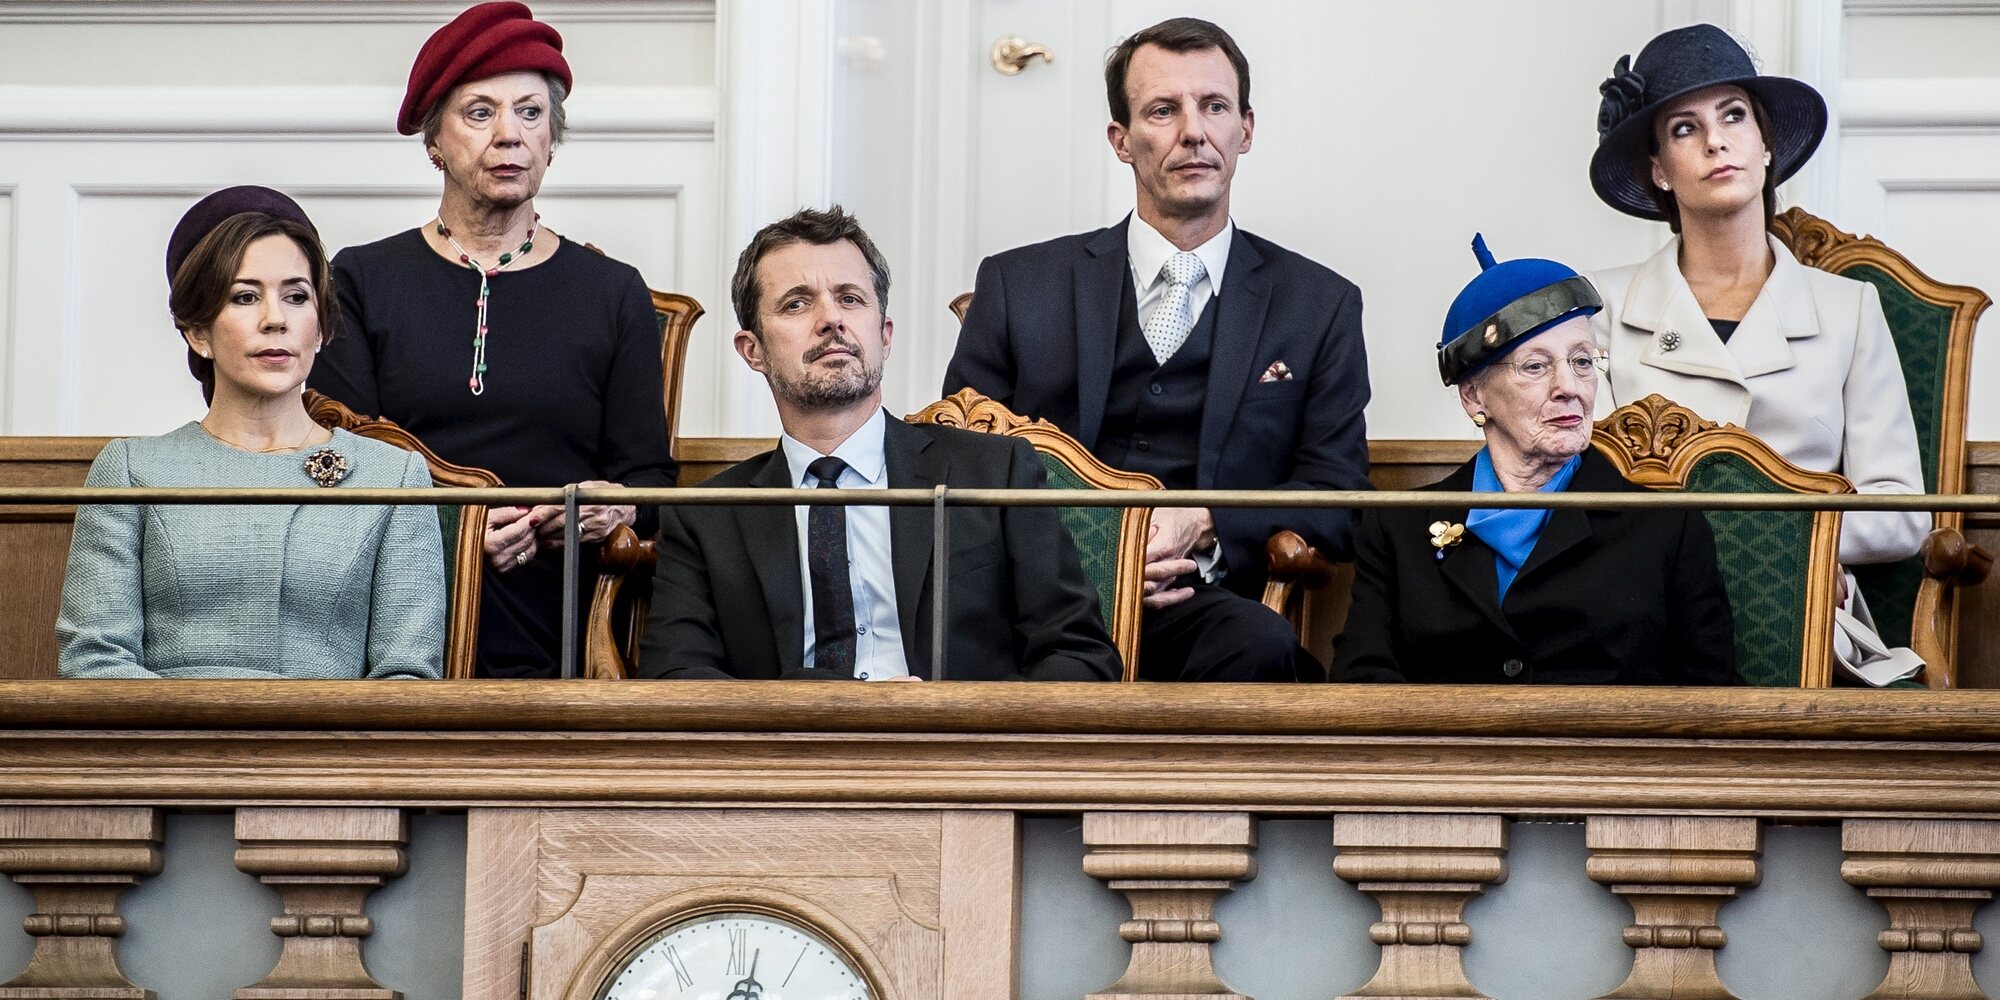 El reencuentro de la Familia Real Danesa en honor a la Reina Margarita tras la polémica de los títulos